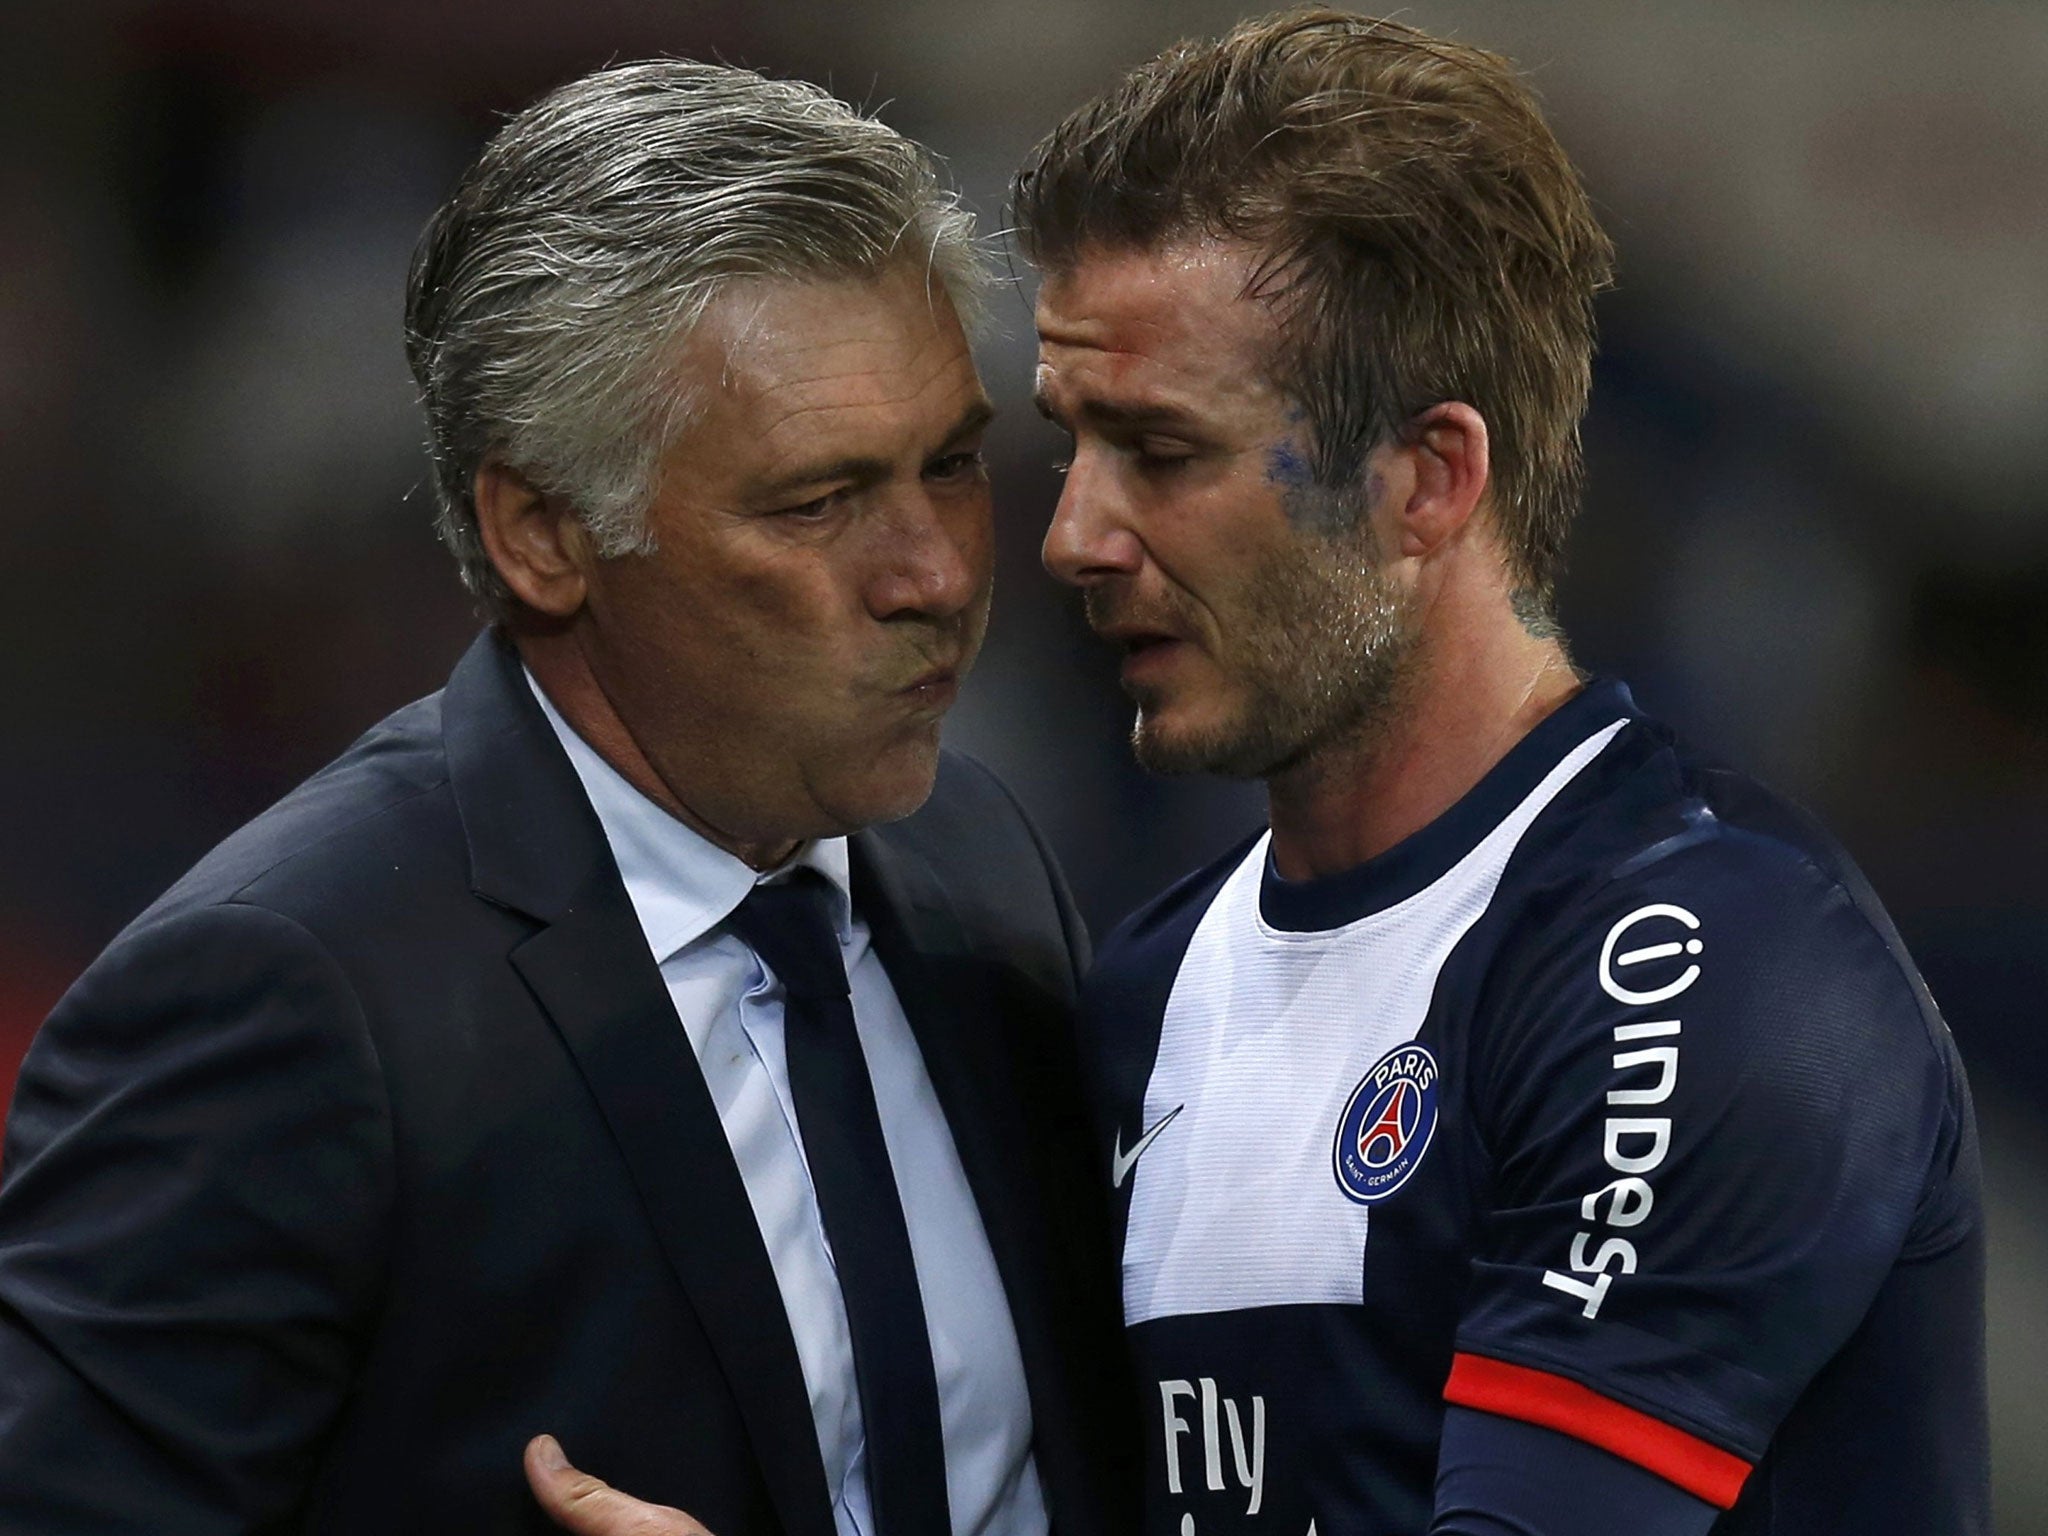 David Beckham breaks down in tears as he hugs coach Carlo Ancelotti